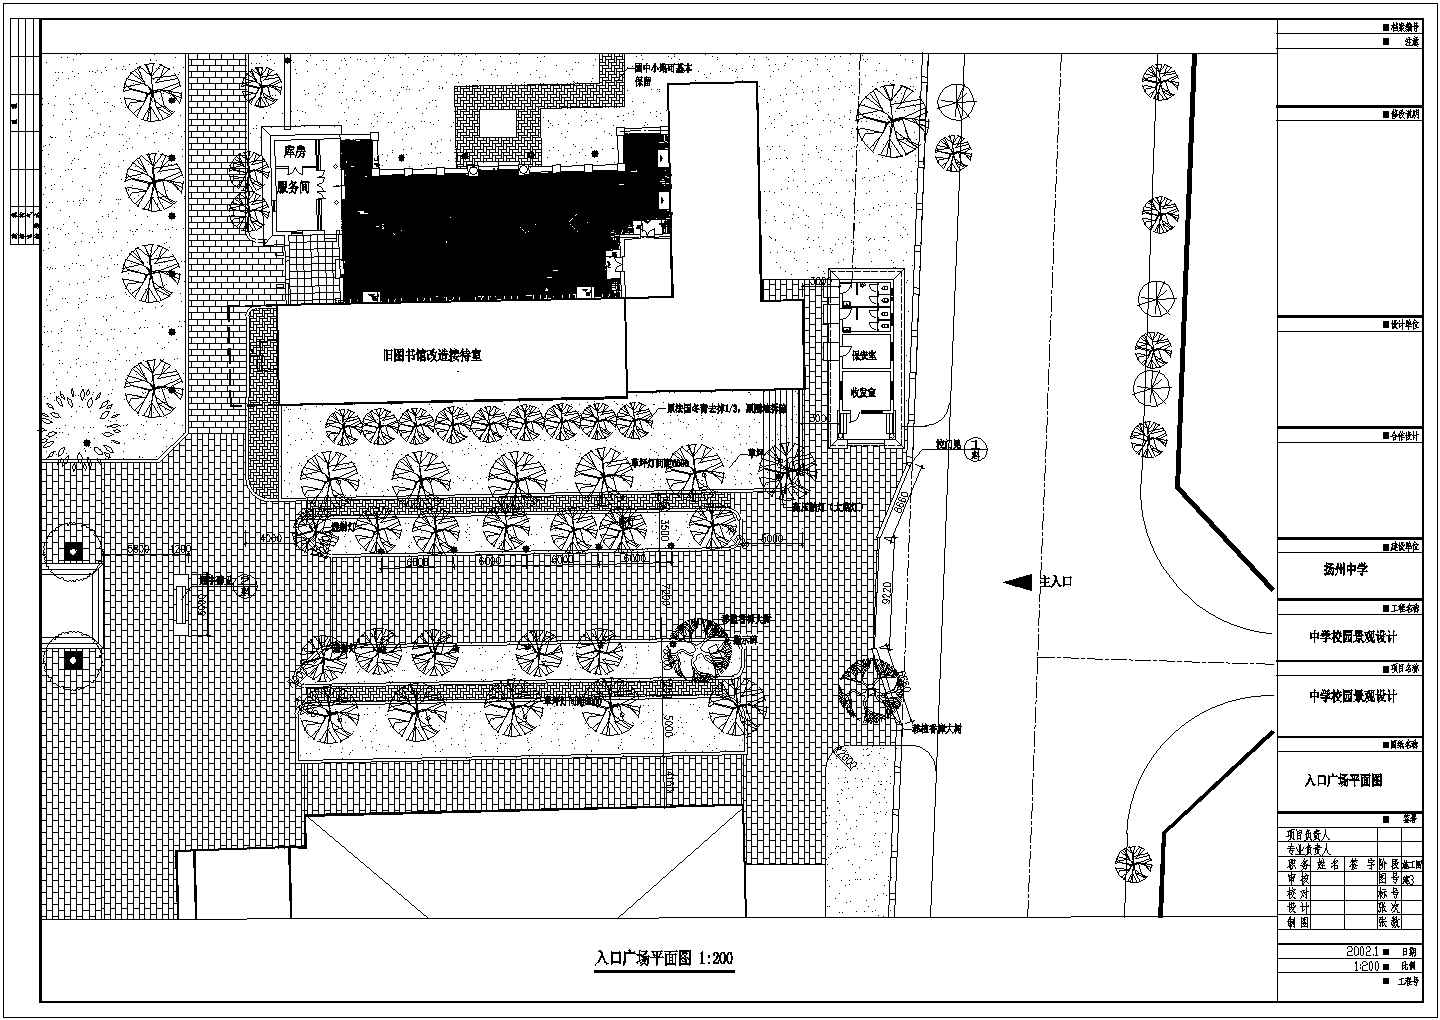 扬州中学校园入口广场景观规划设计图